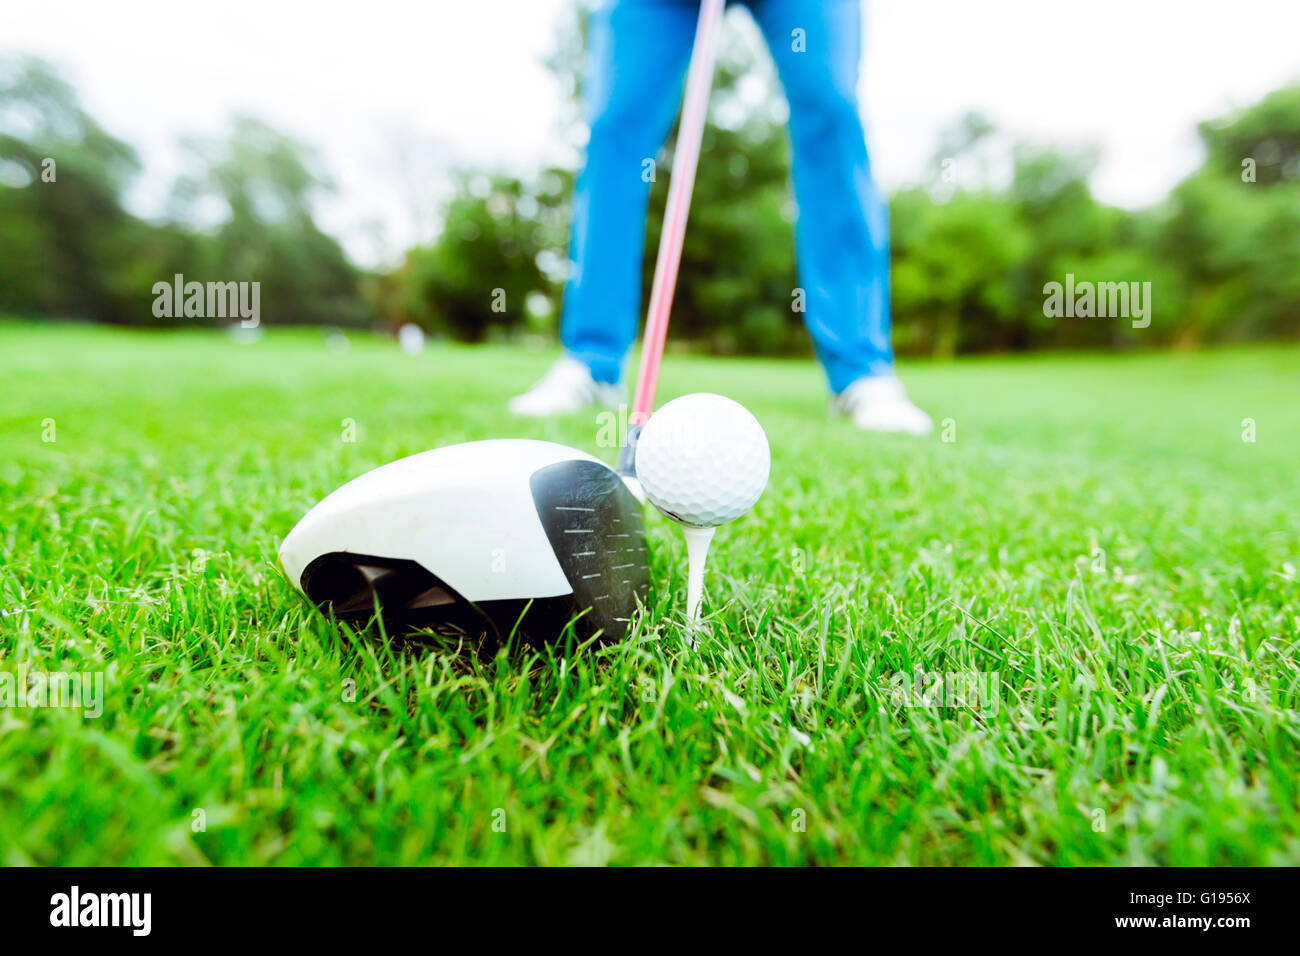 Golfeur s'apprête à prendre un coup. Gros plan et photo grand angle Banque D'Images